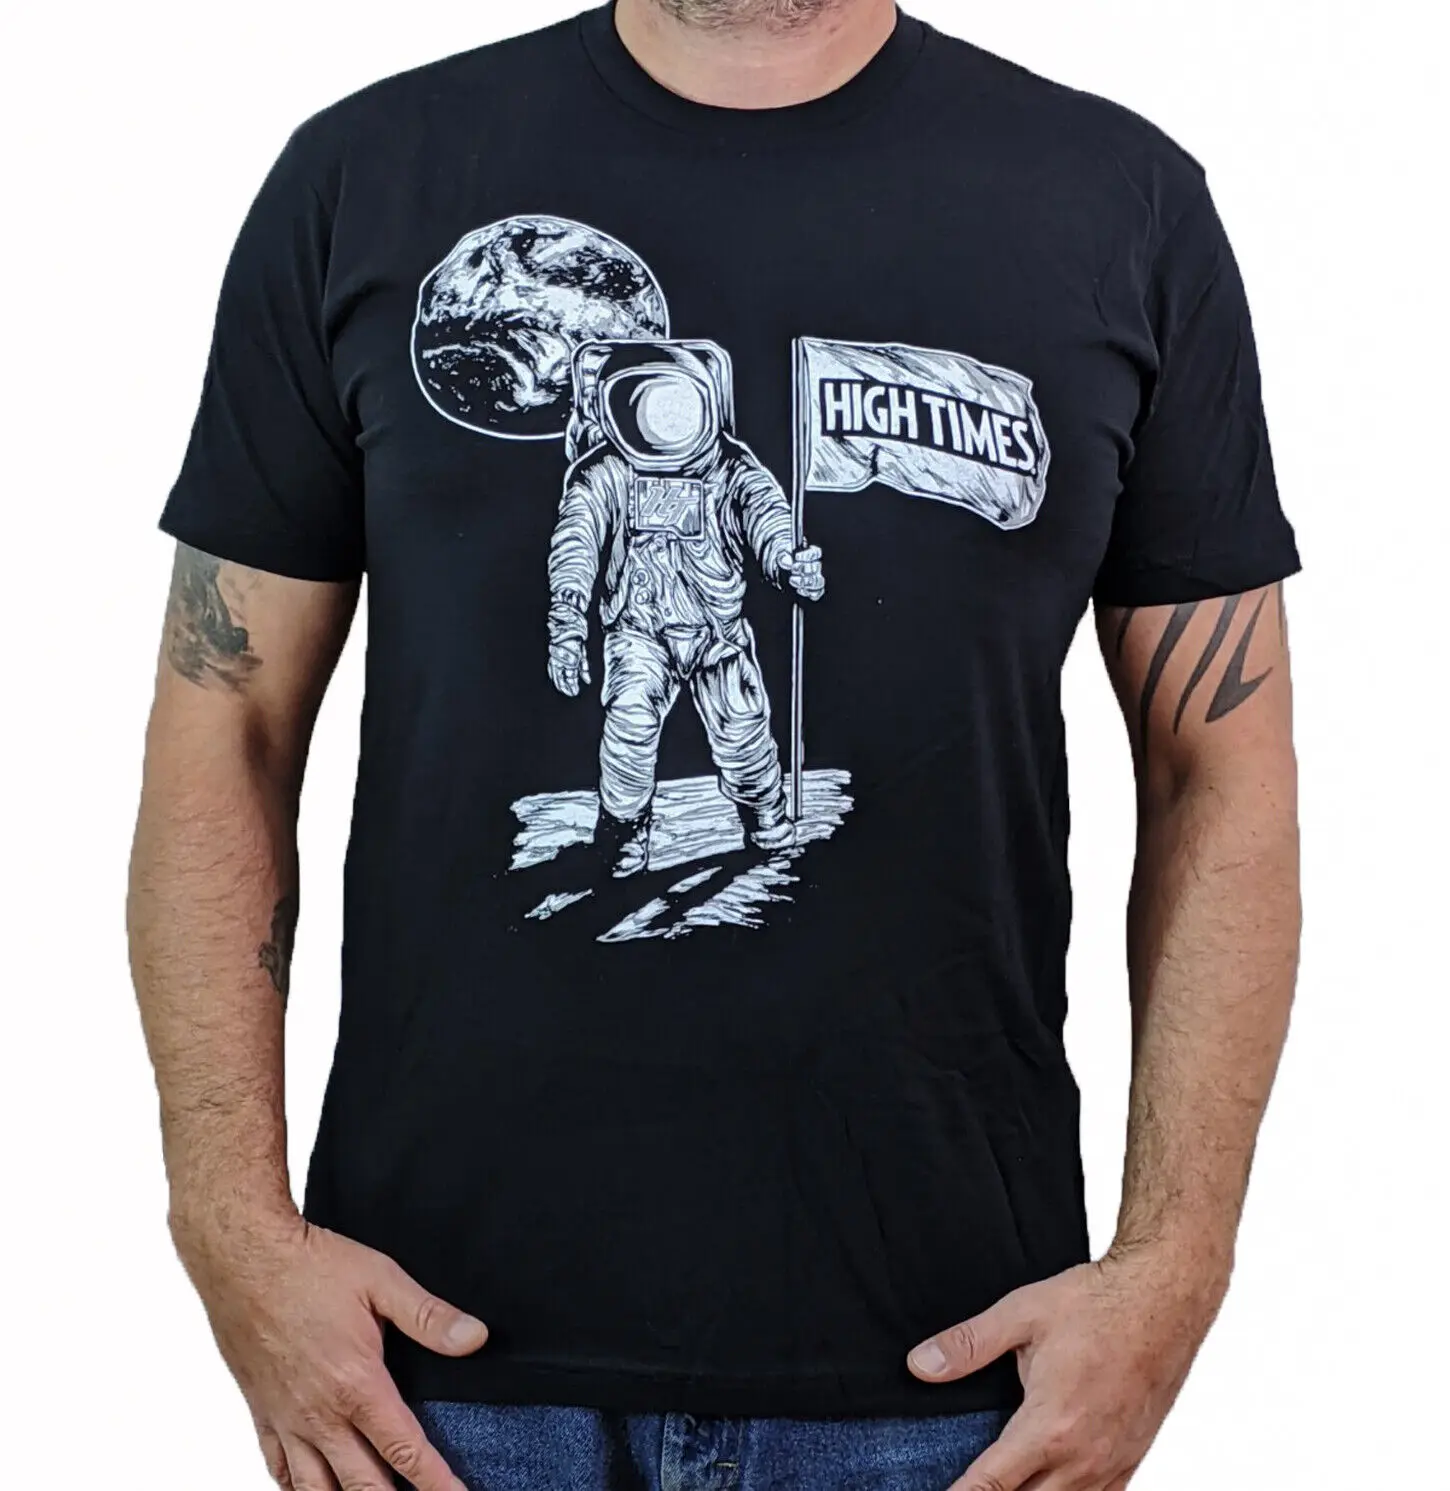 Мужская футболка HIGH TIMES (Moonman)